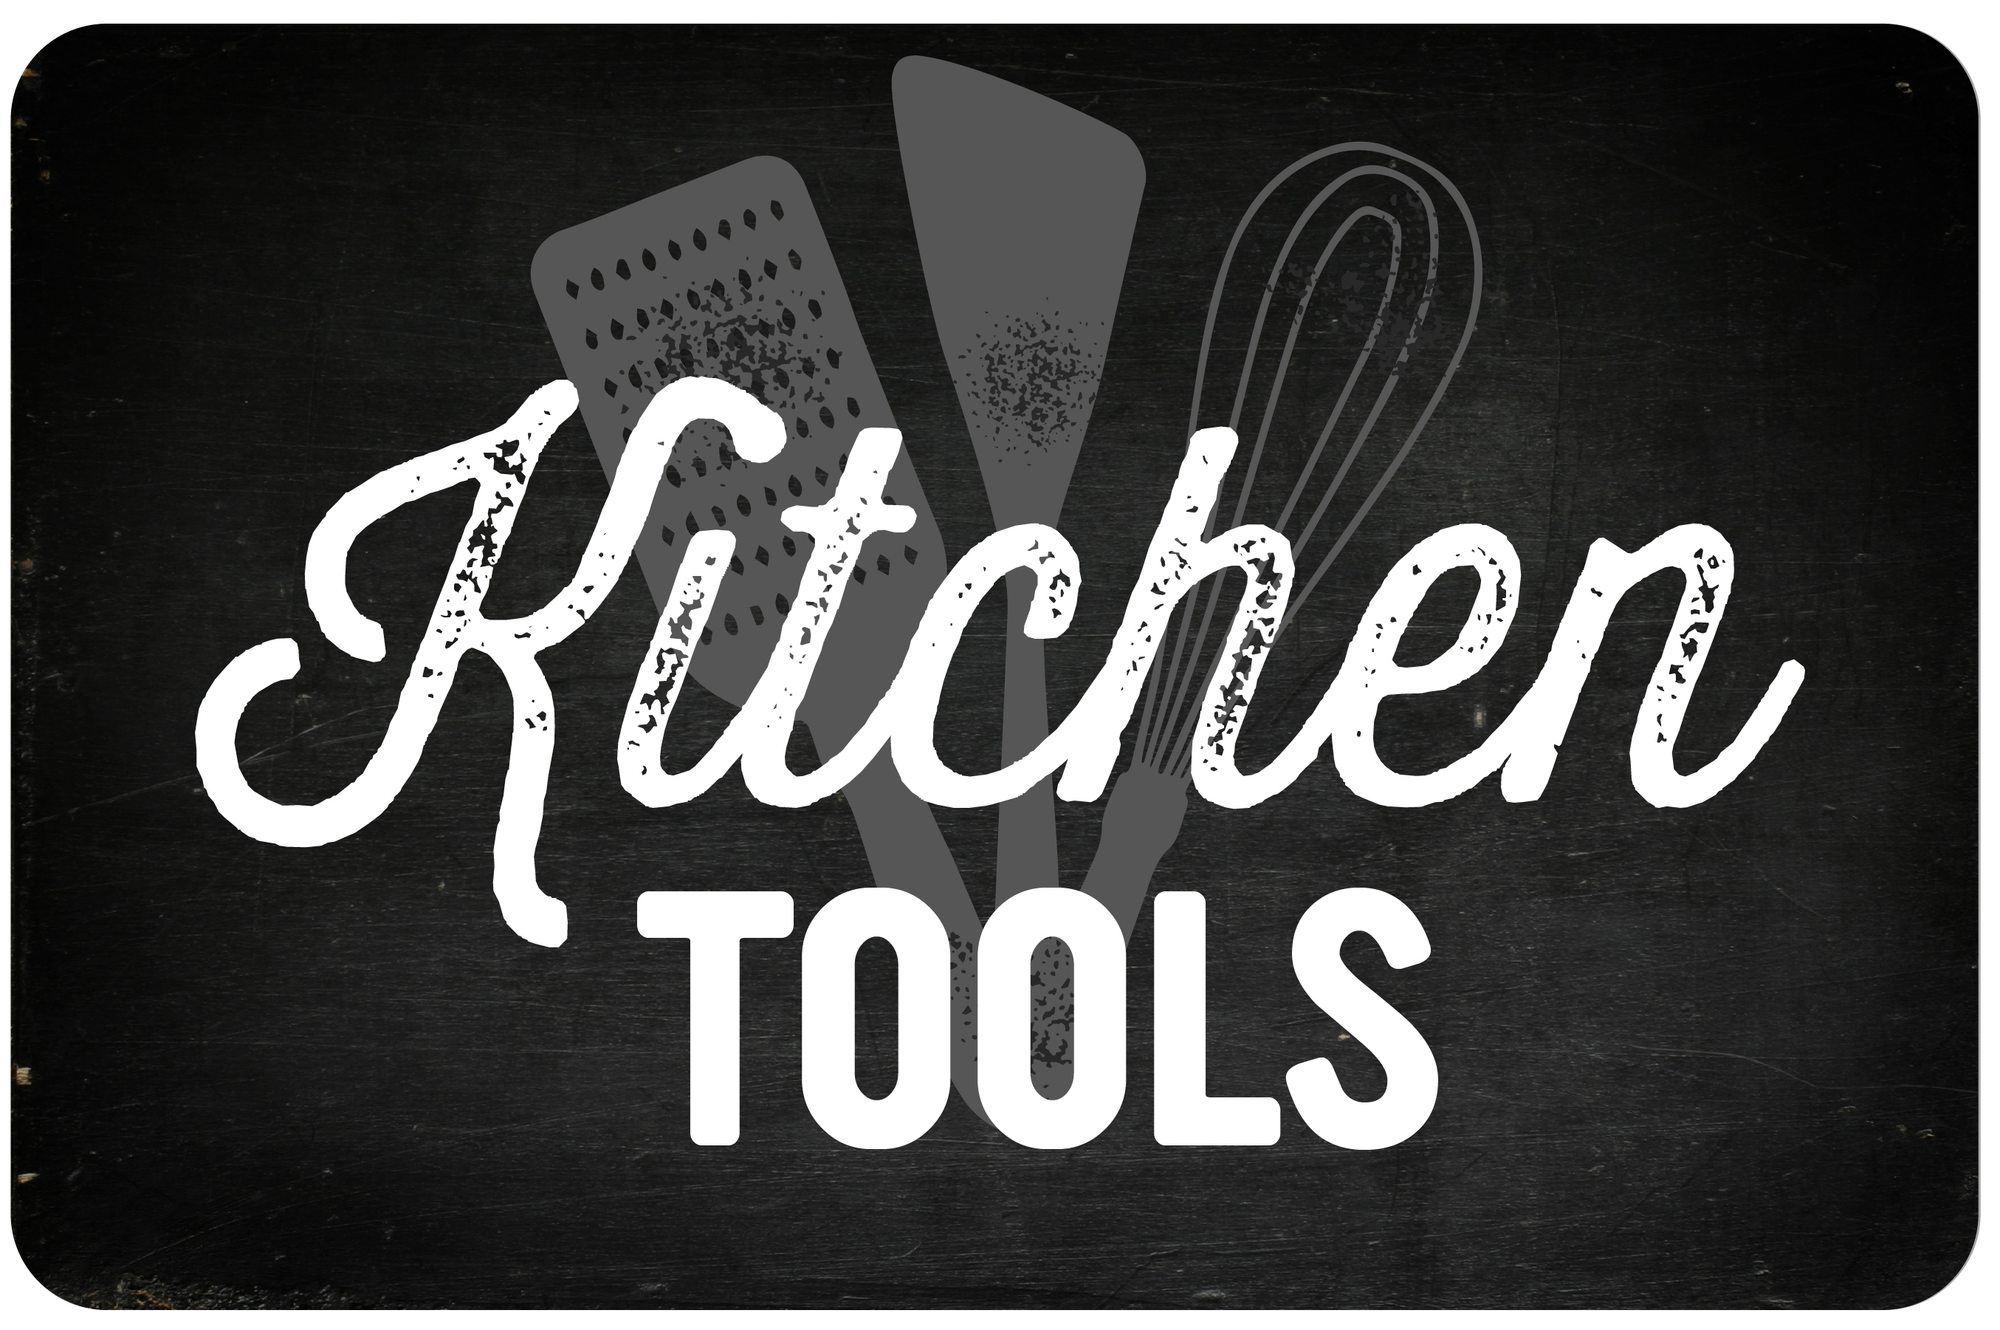 Kitchen Tools